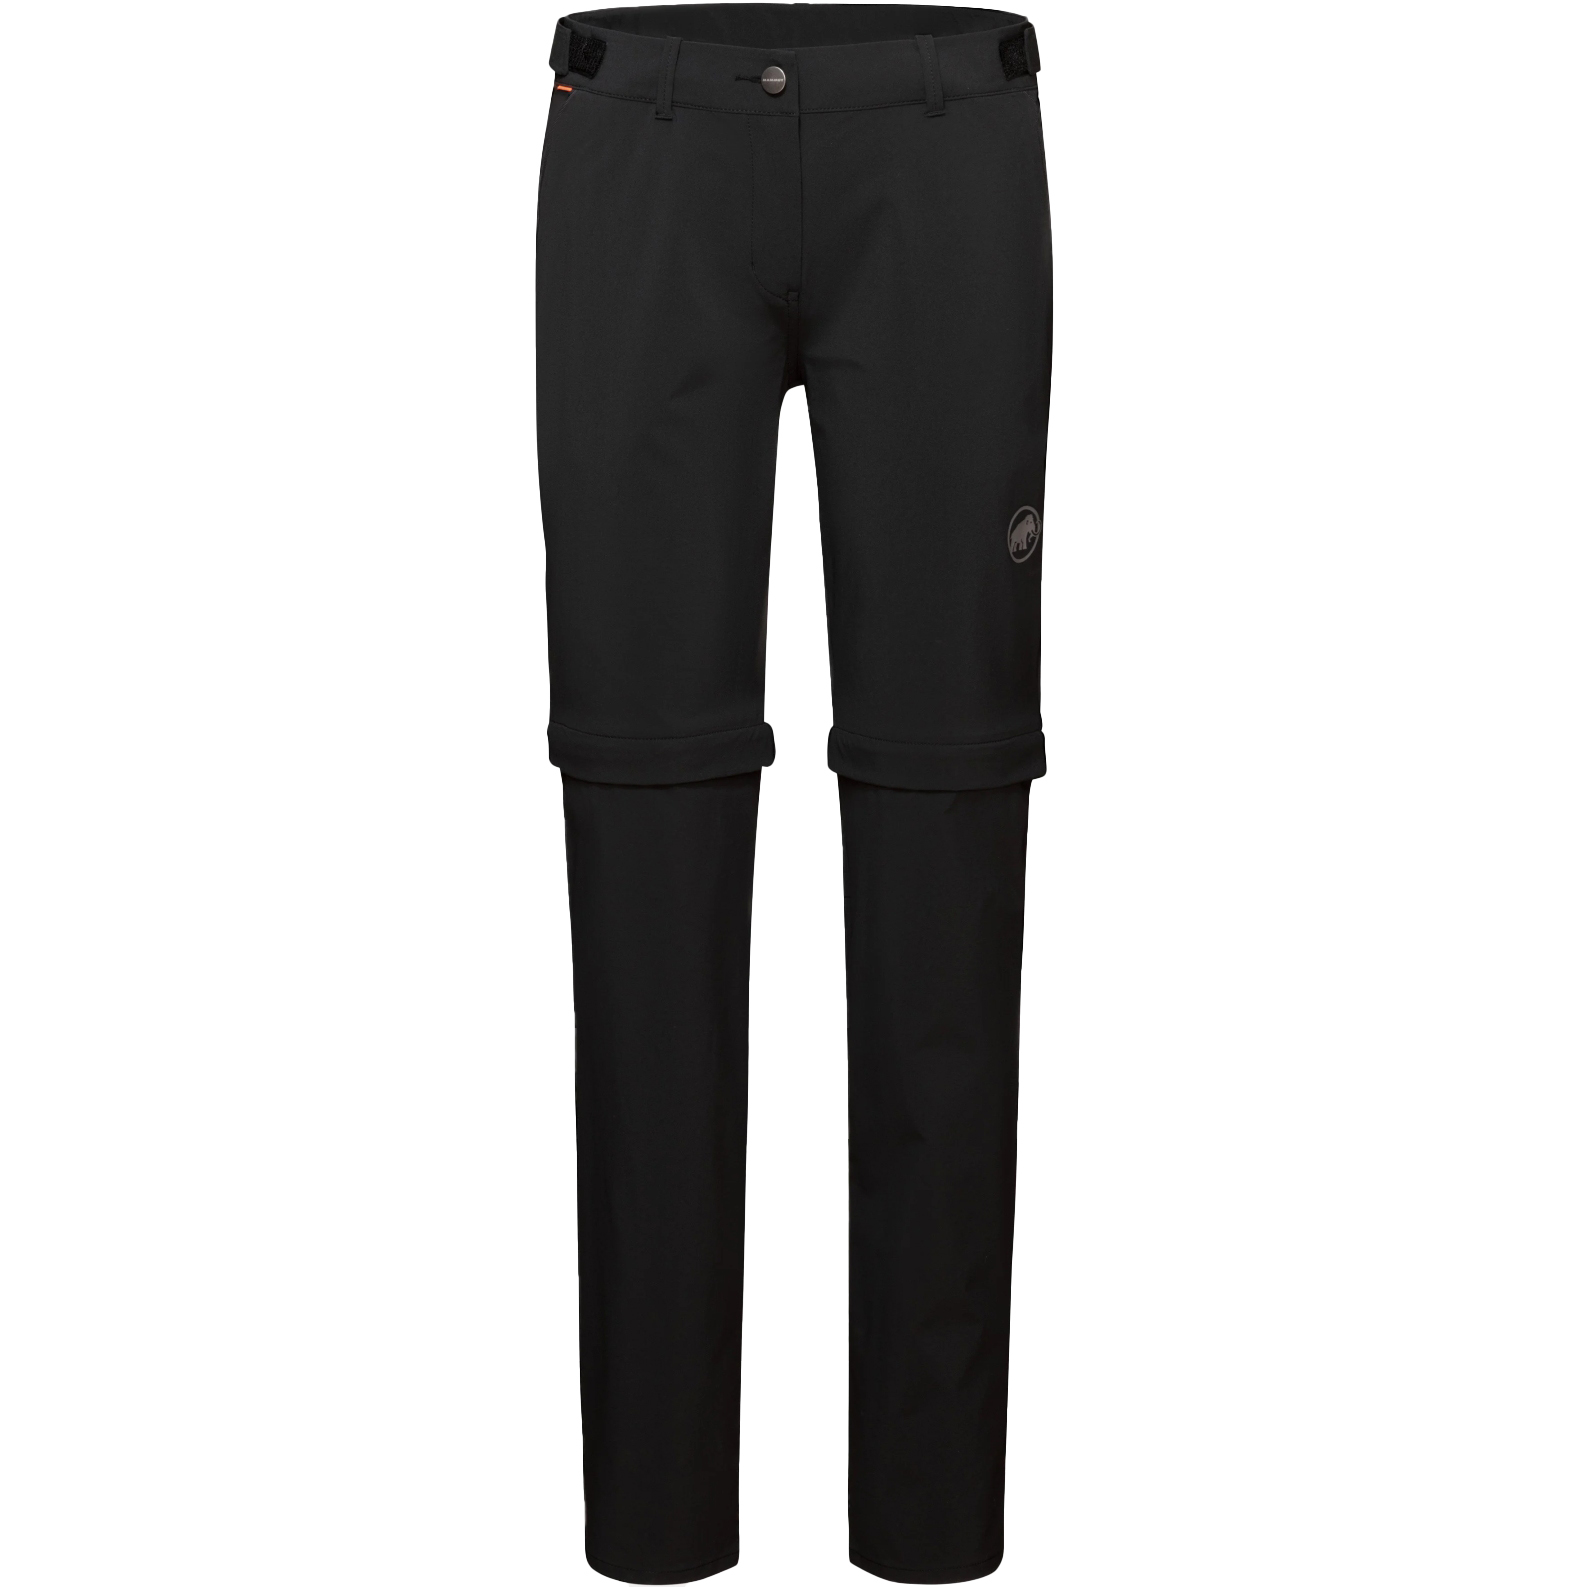 Produktbild von Mammut Runbold Zip Off Hose Damen - Kurz - schwarz